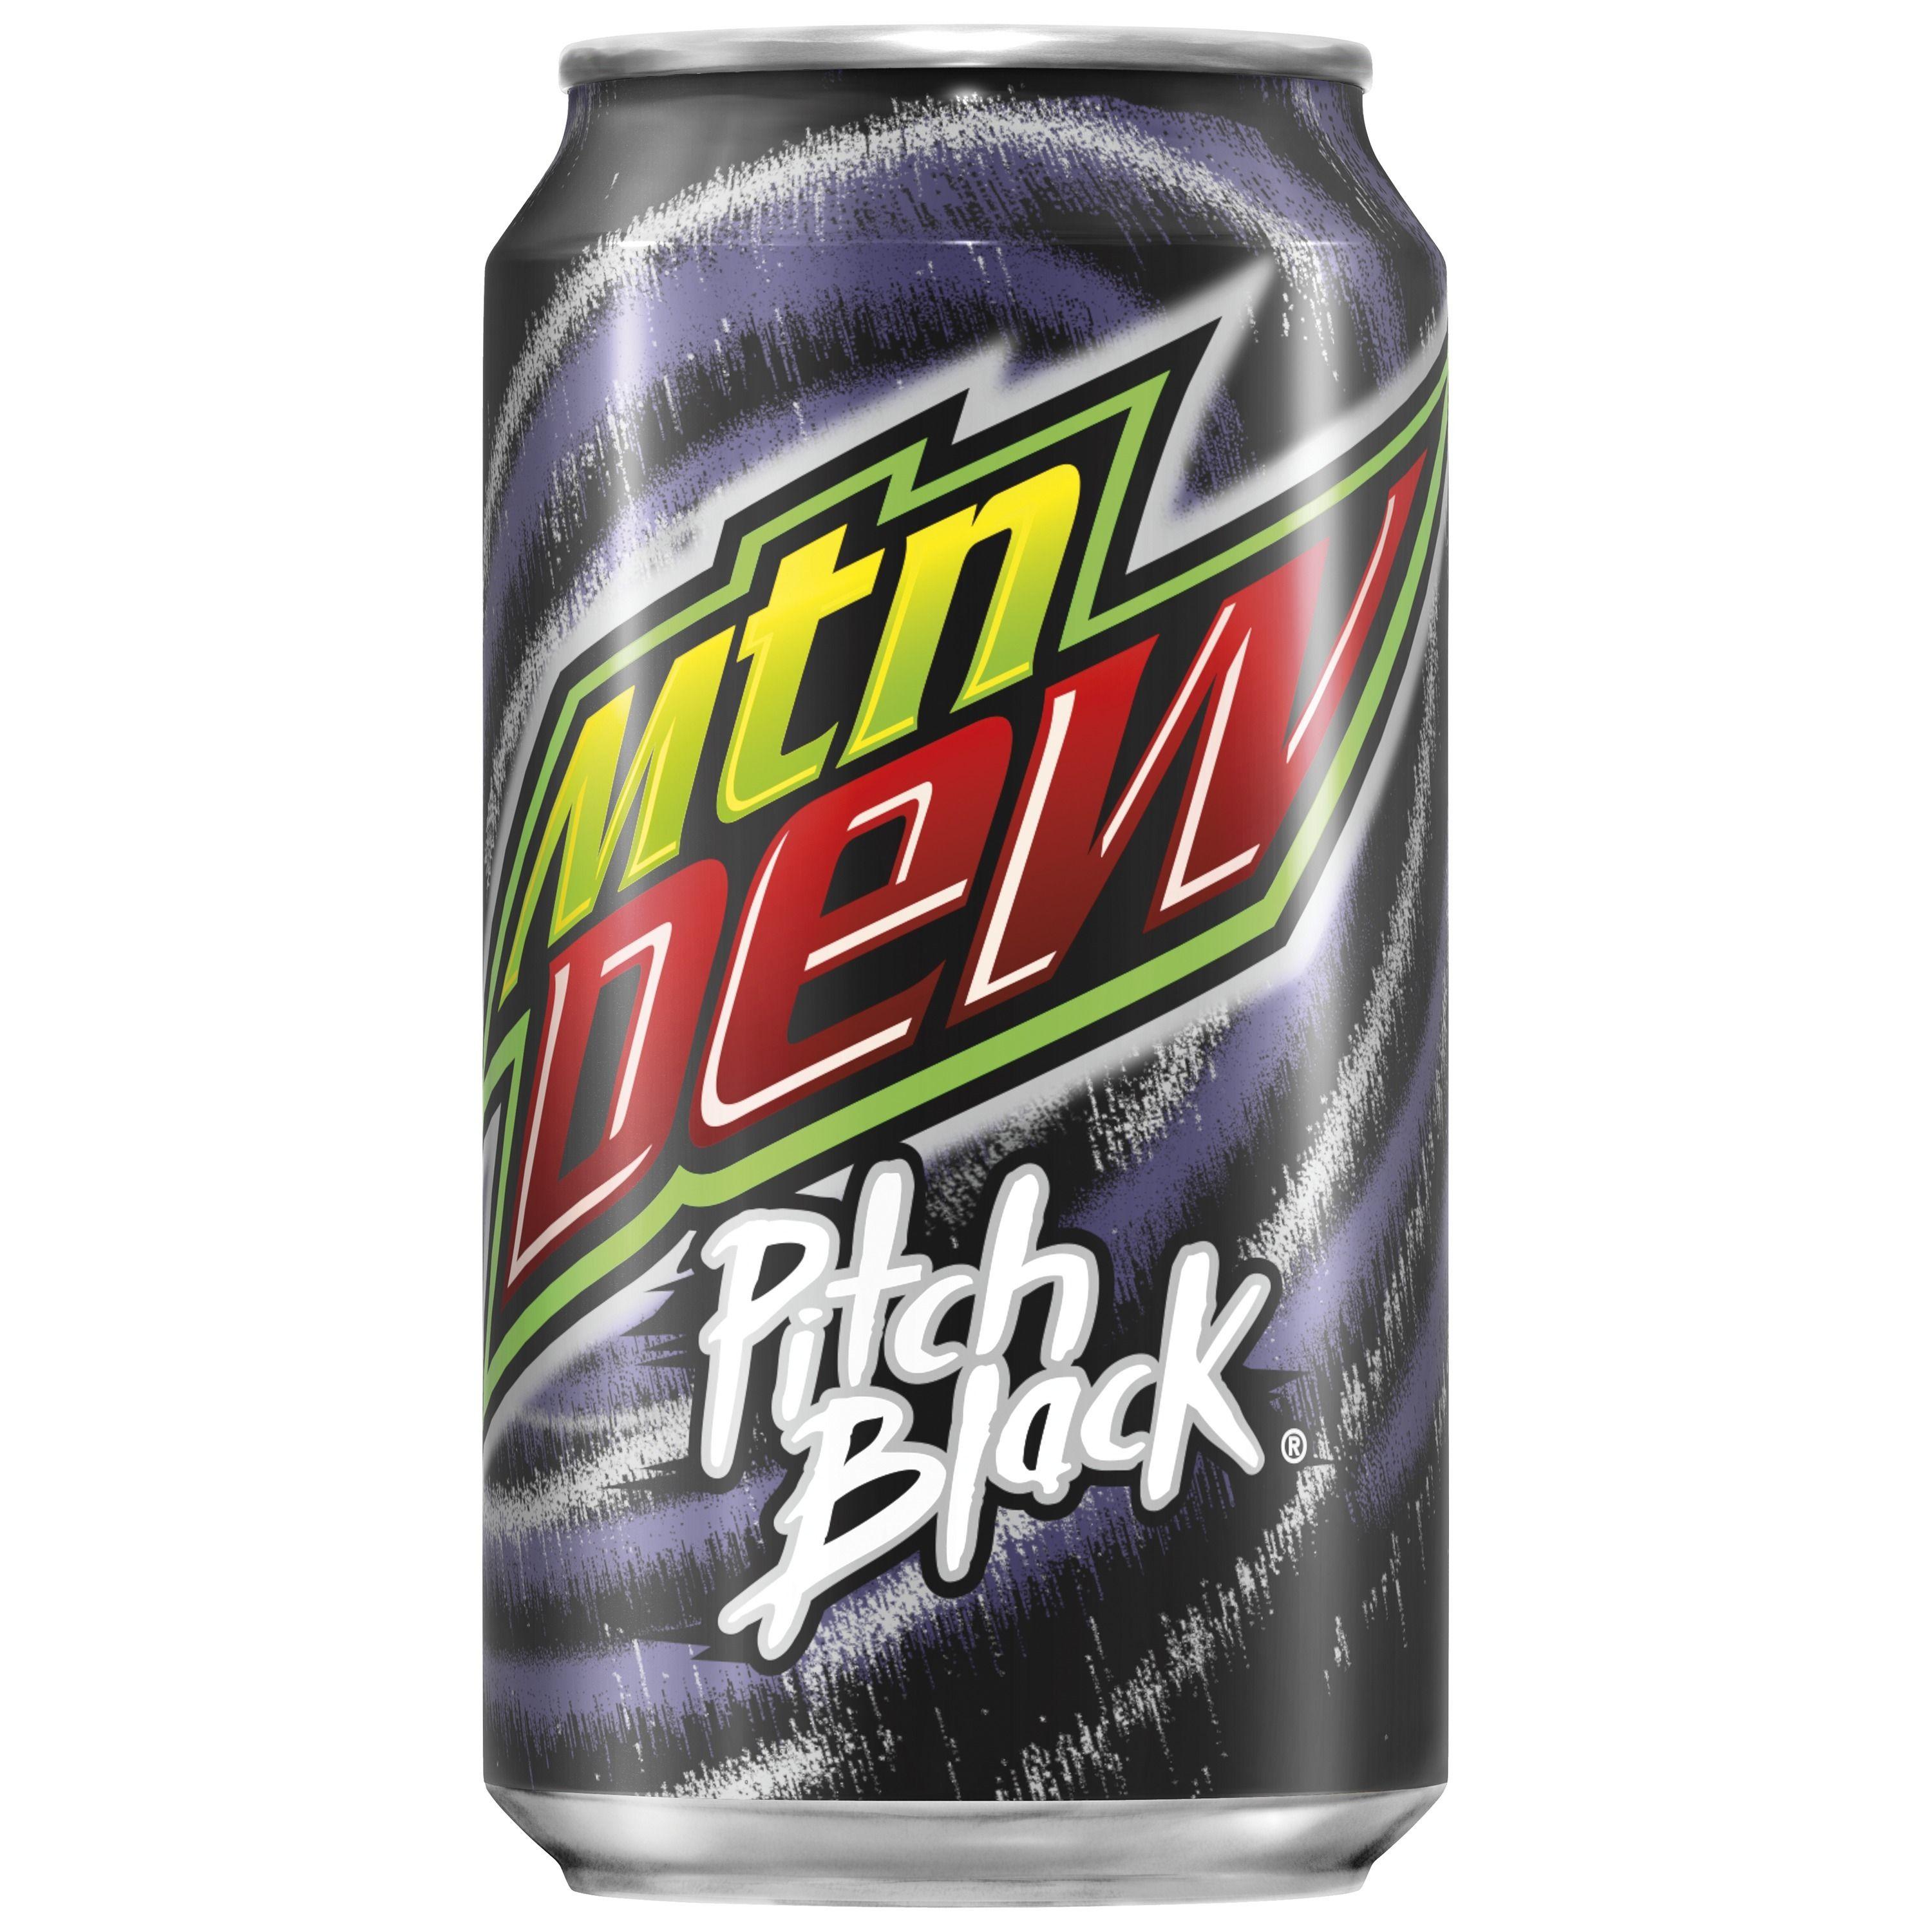 Black Mtn Dew Logo - Mountain Dew Pitch Black Soda, 12 Count, 12 fl. oz. Cans